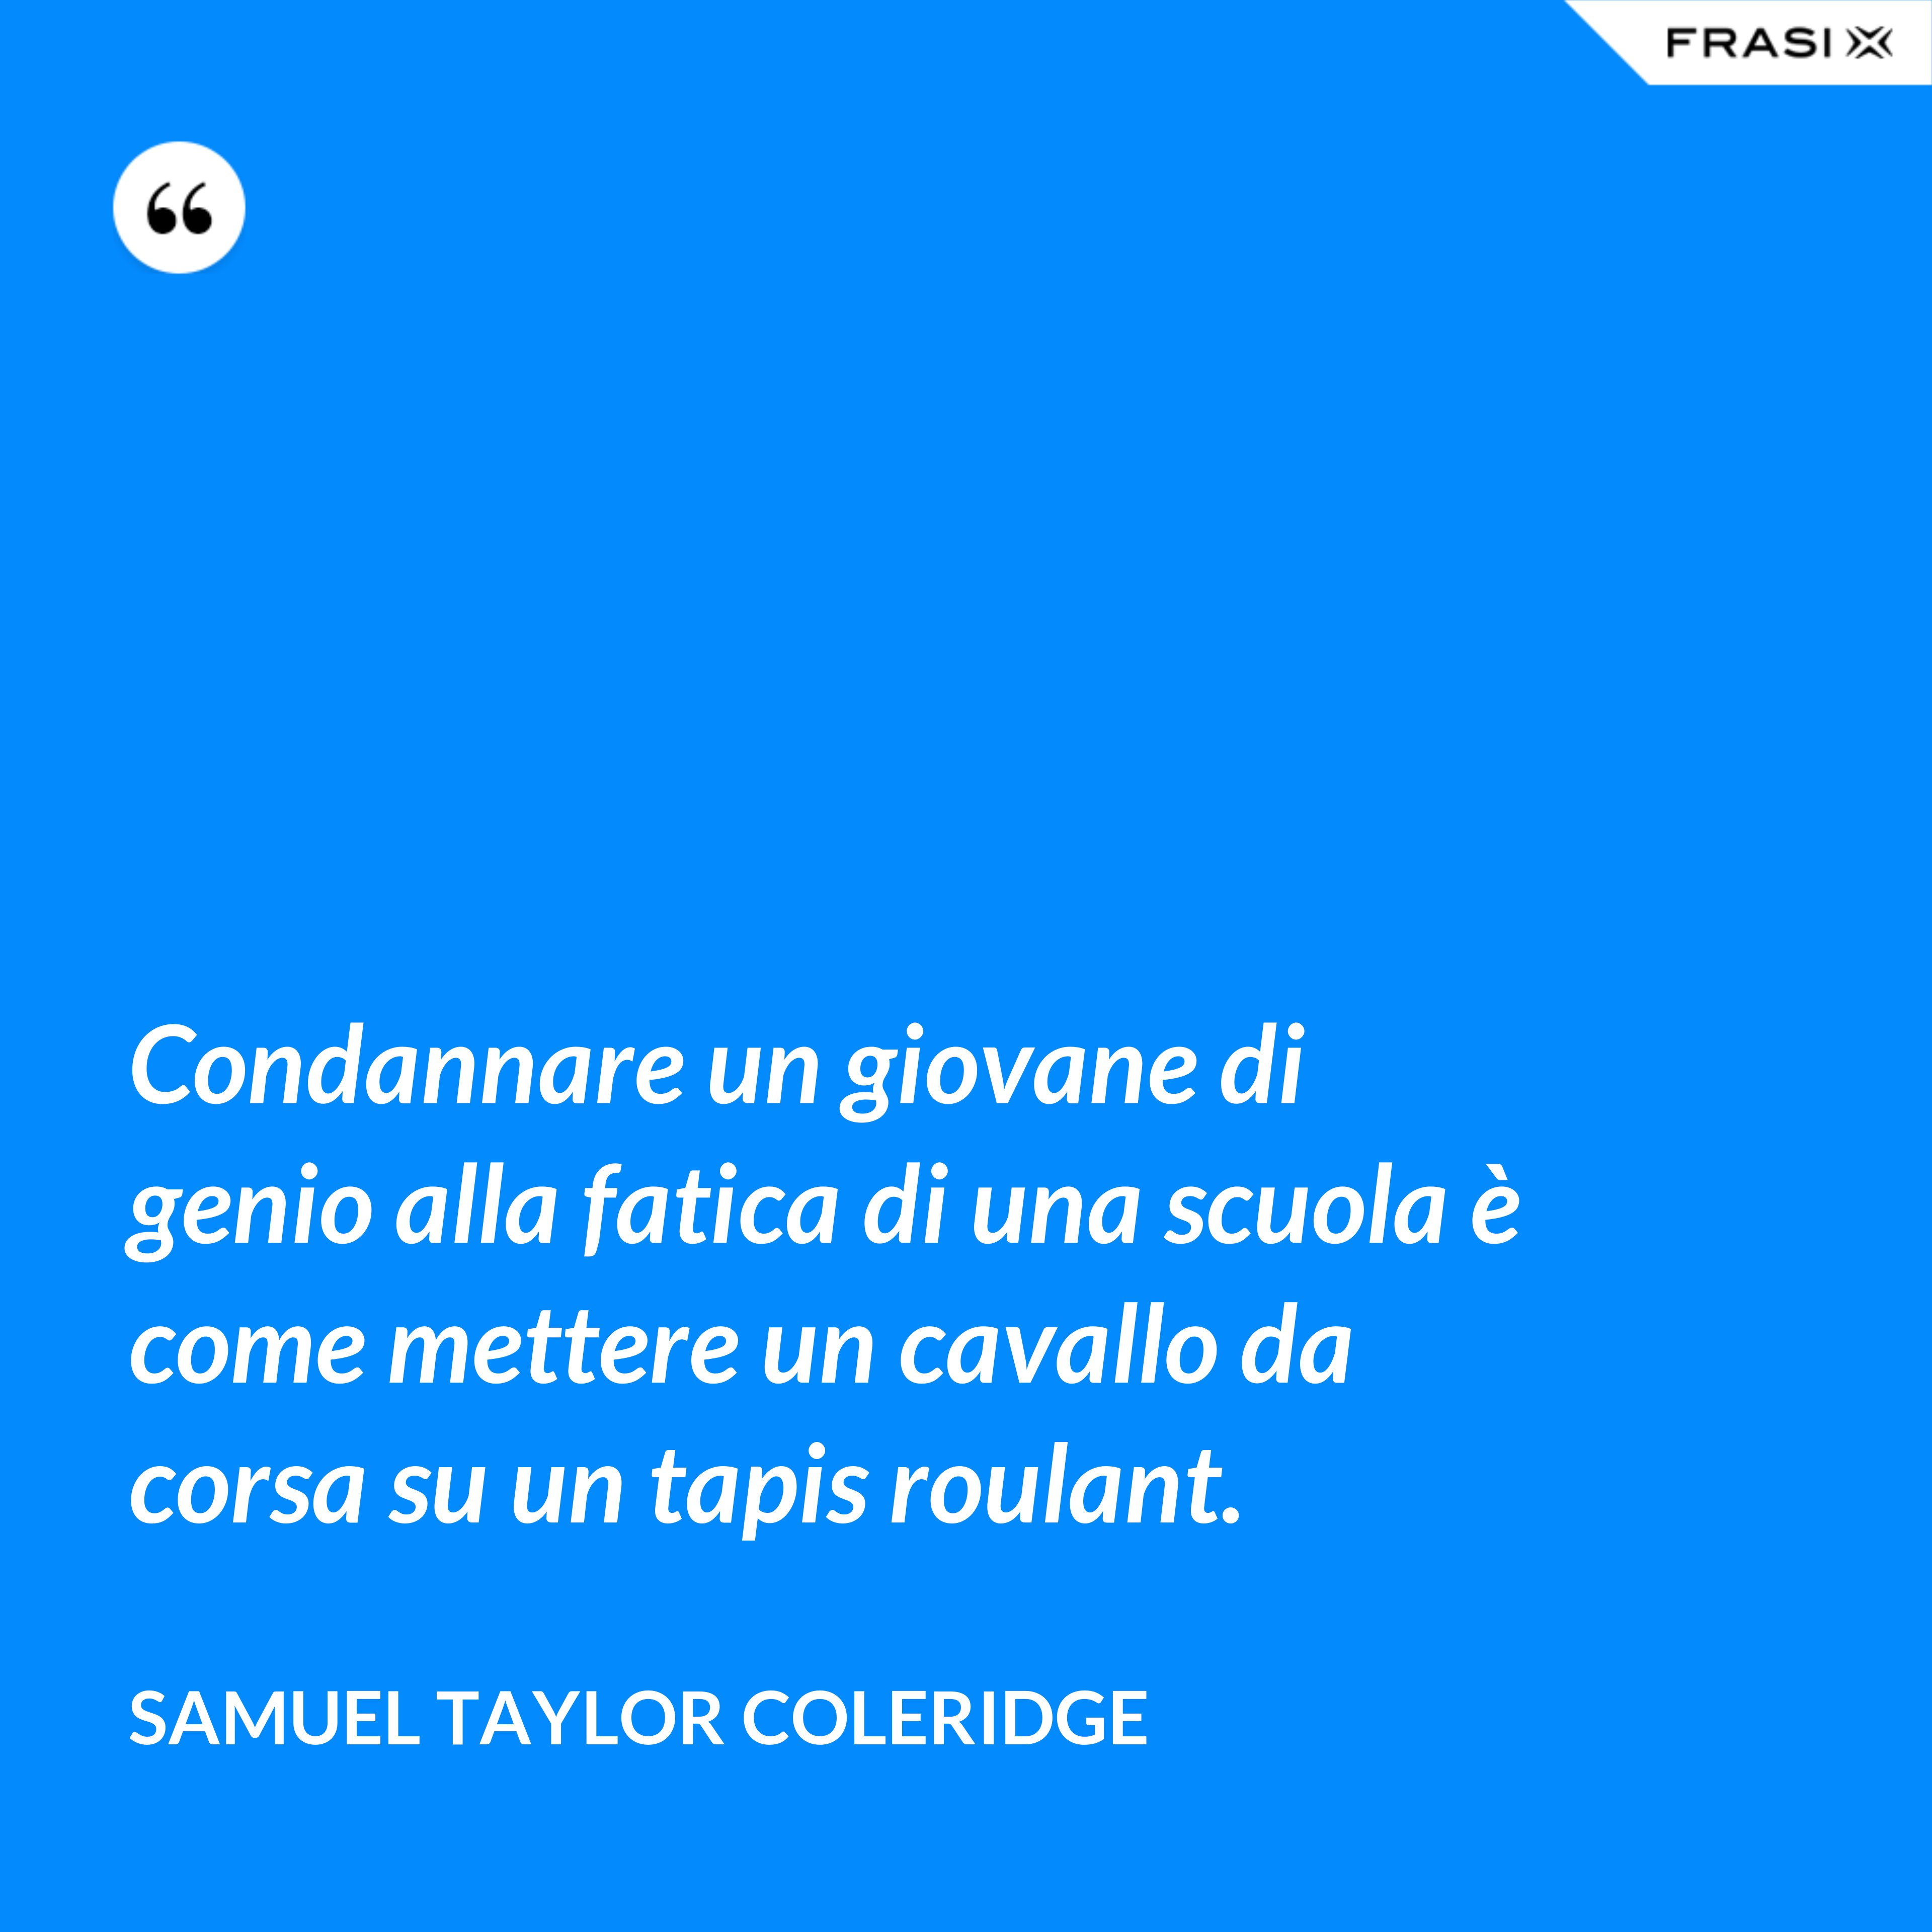 Condannare un giovane di genio alla fatica di una scuola è come mettere un cavallo da corsa su un tapis roulant. - Samuel Taylor Coleridge